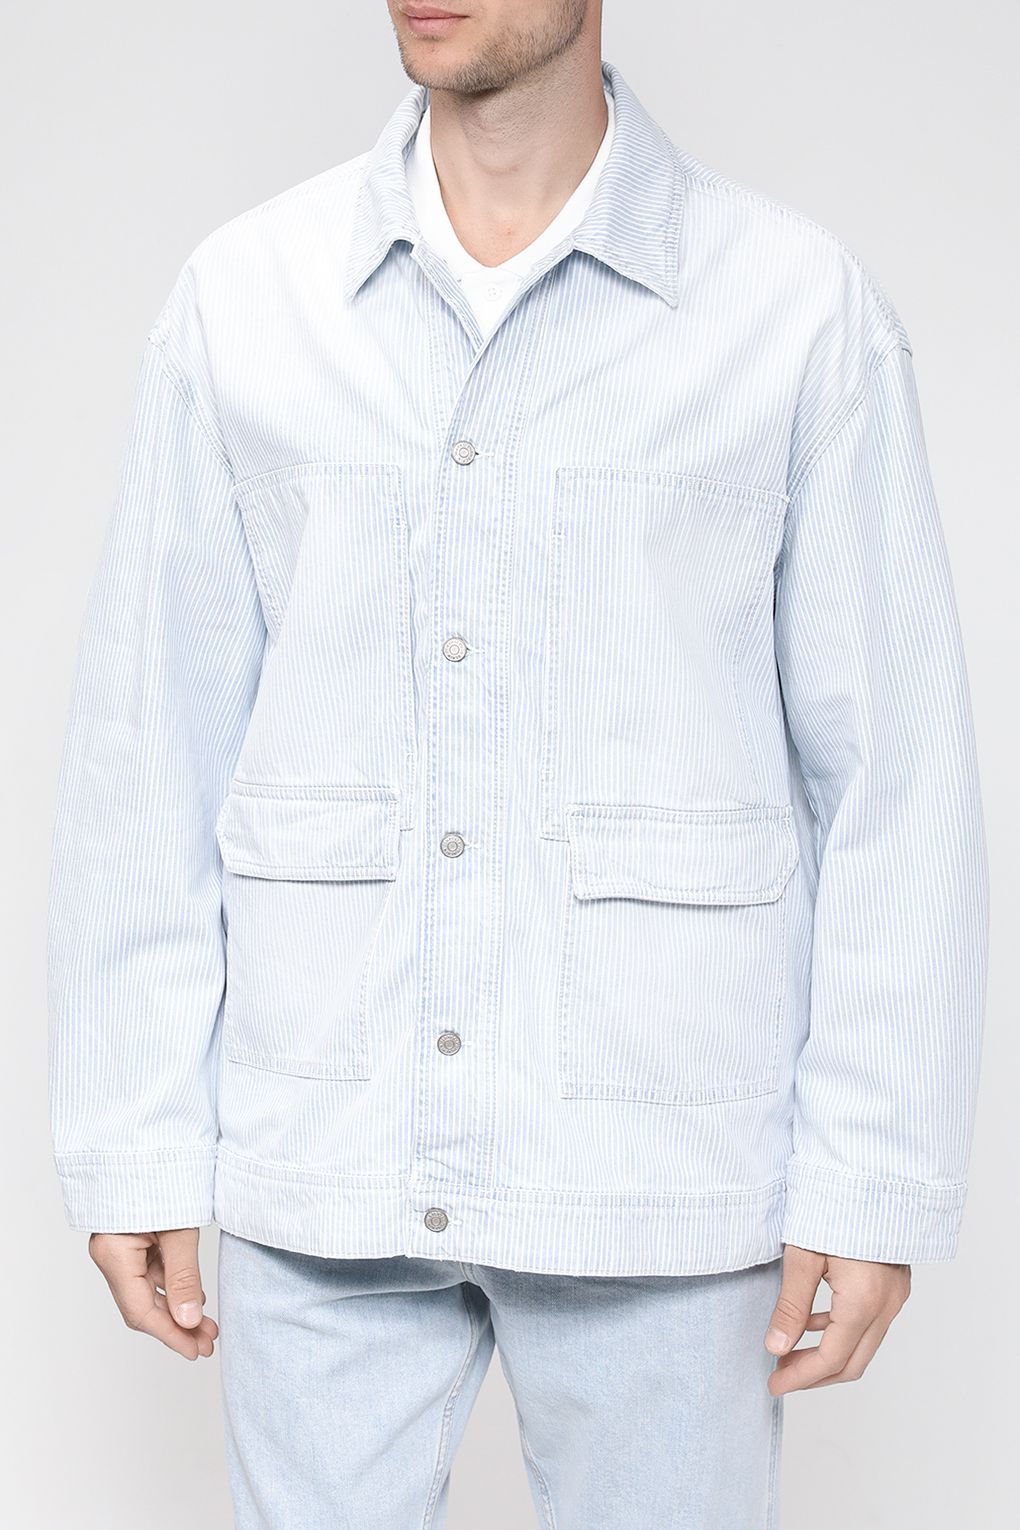 Джинсовая куртка мужская Marc O'Polo Denim 363917325026 голубая XL